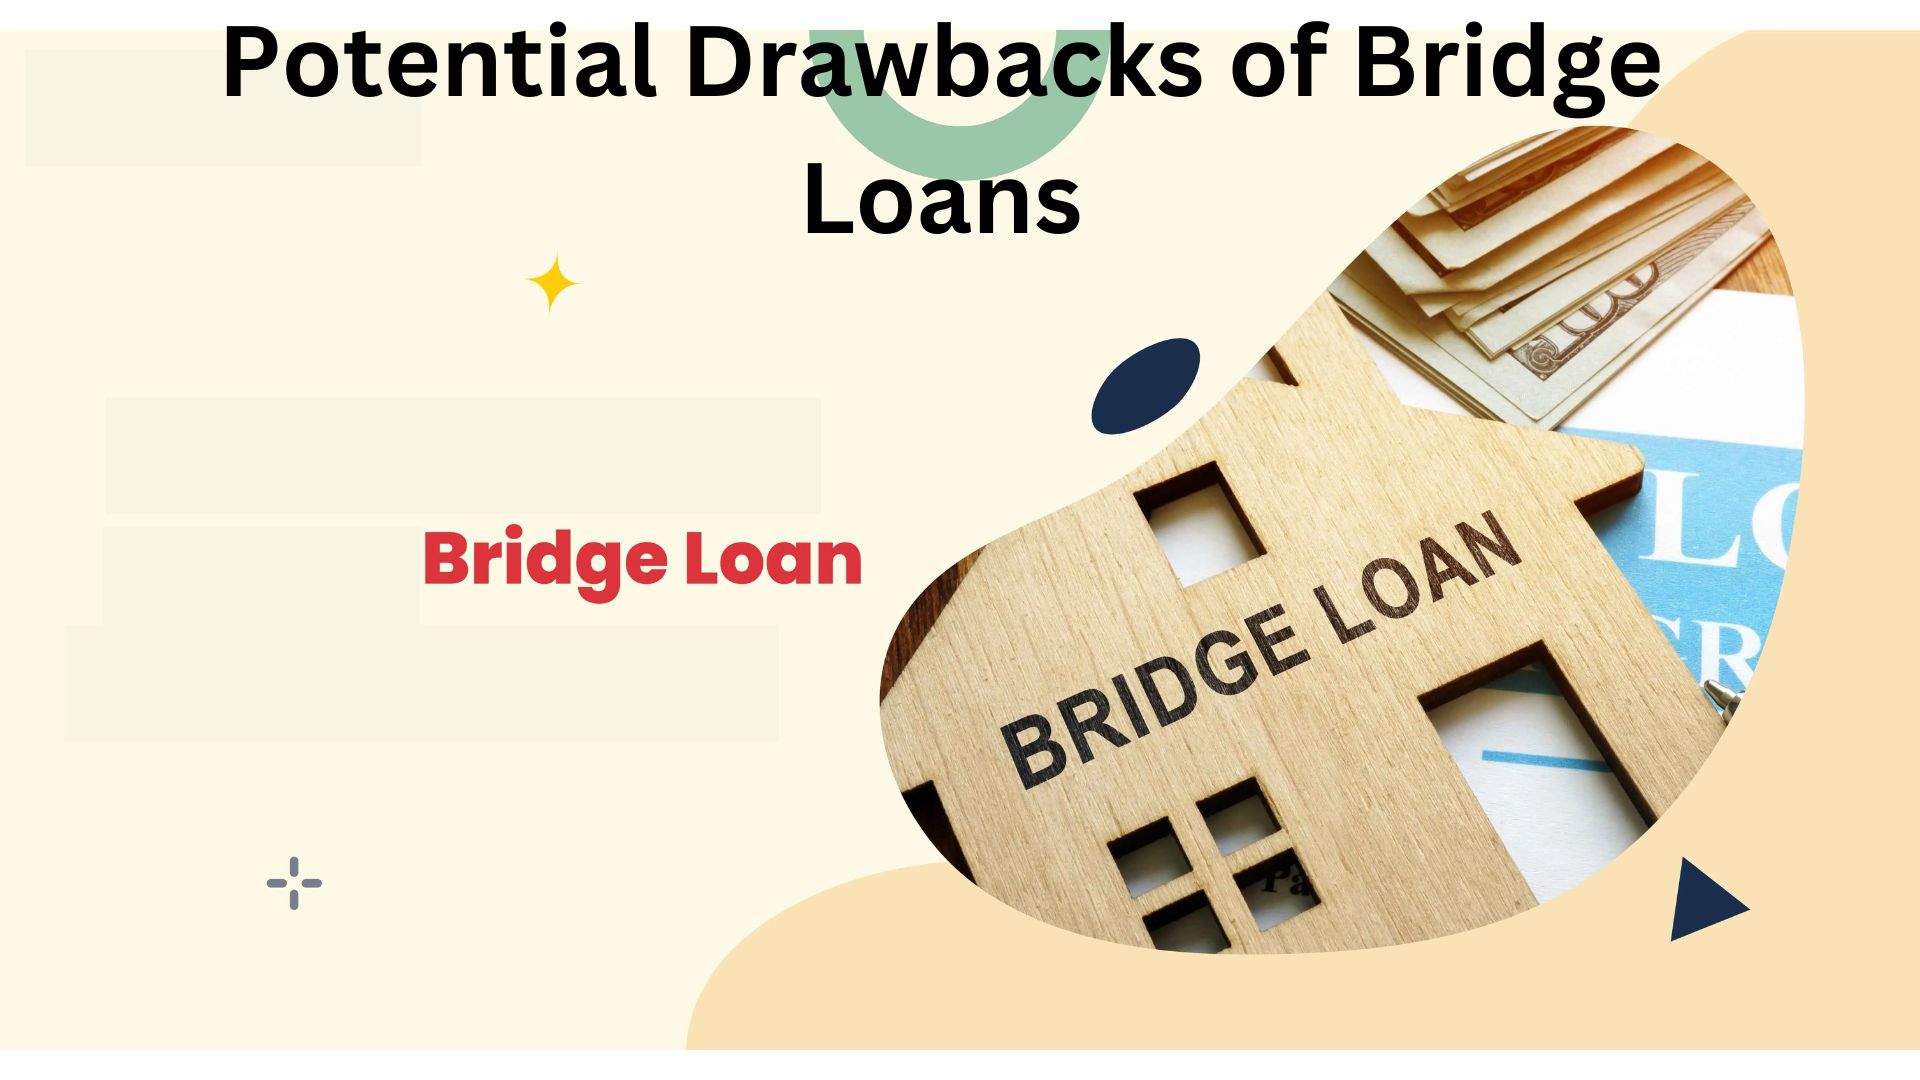 Potential Drawbacks of Bridge Loans